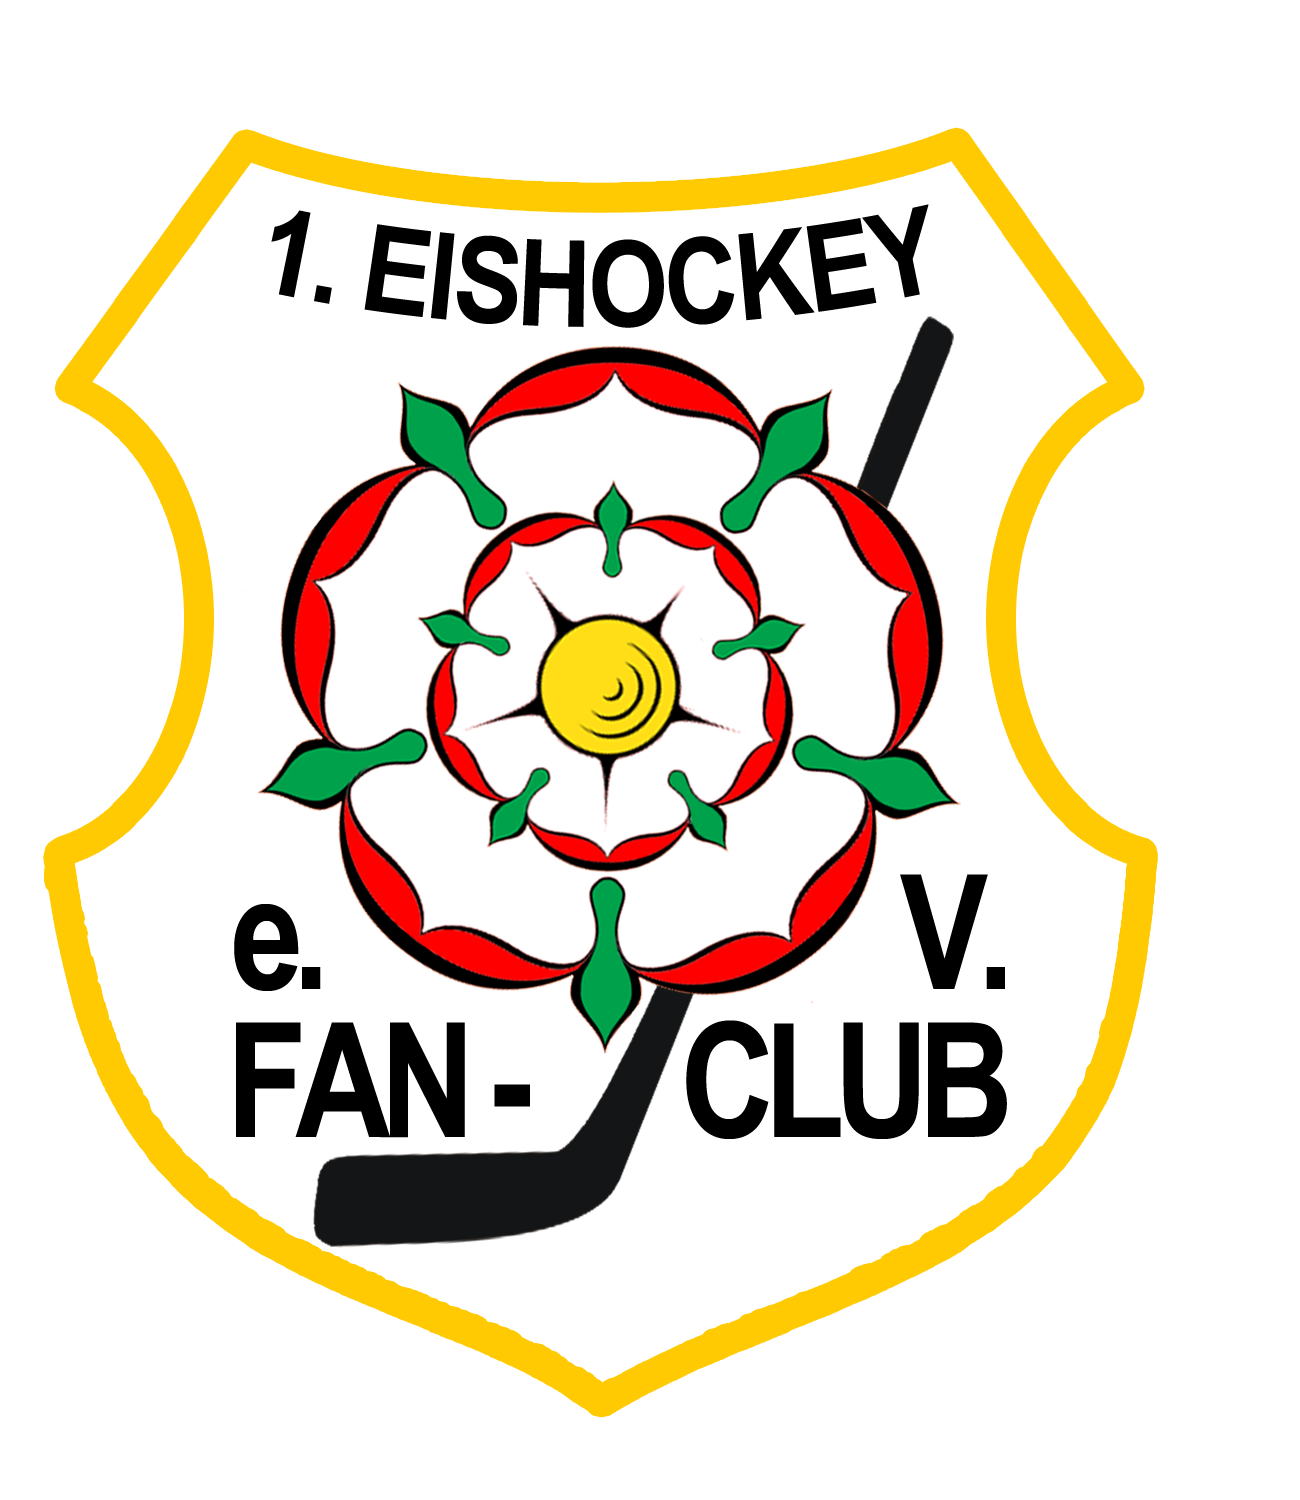 1. Rosenheimer Eishockey Fanclub